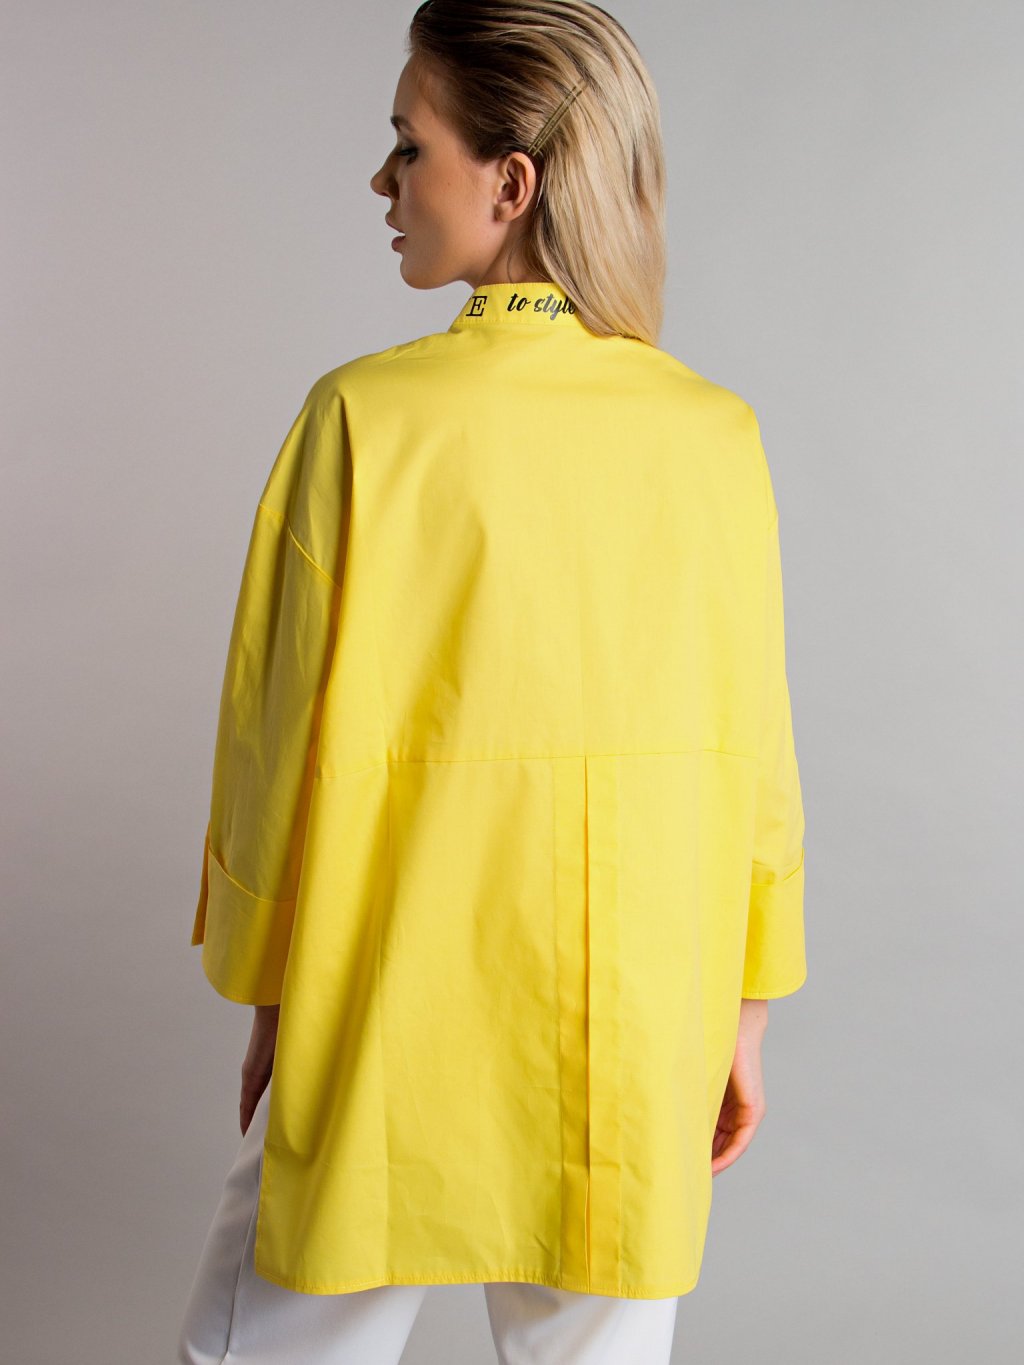 Блуза с надписями цвет желтый Б-115-5 - 3